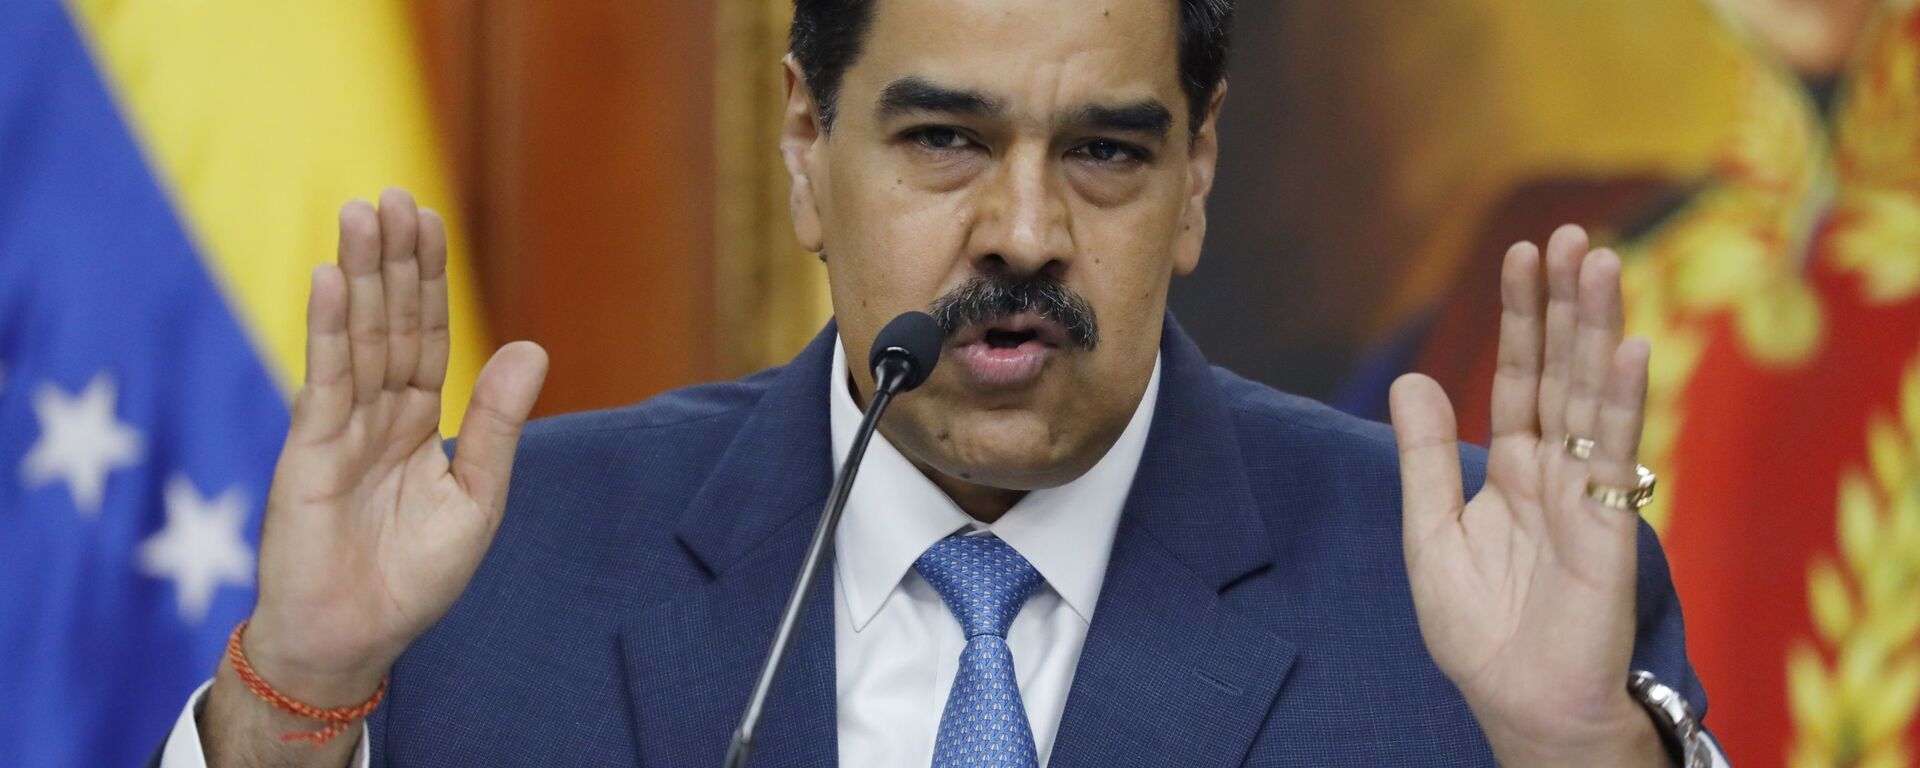 Nicolás Maduro, el presidente de Venezuela - Sputnik Mundo, 1920, 17.06.2020